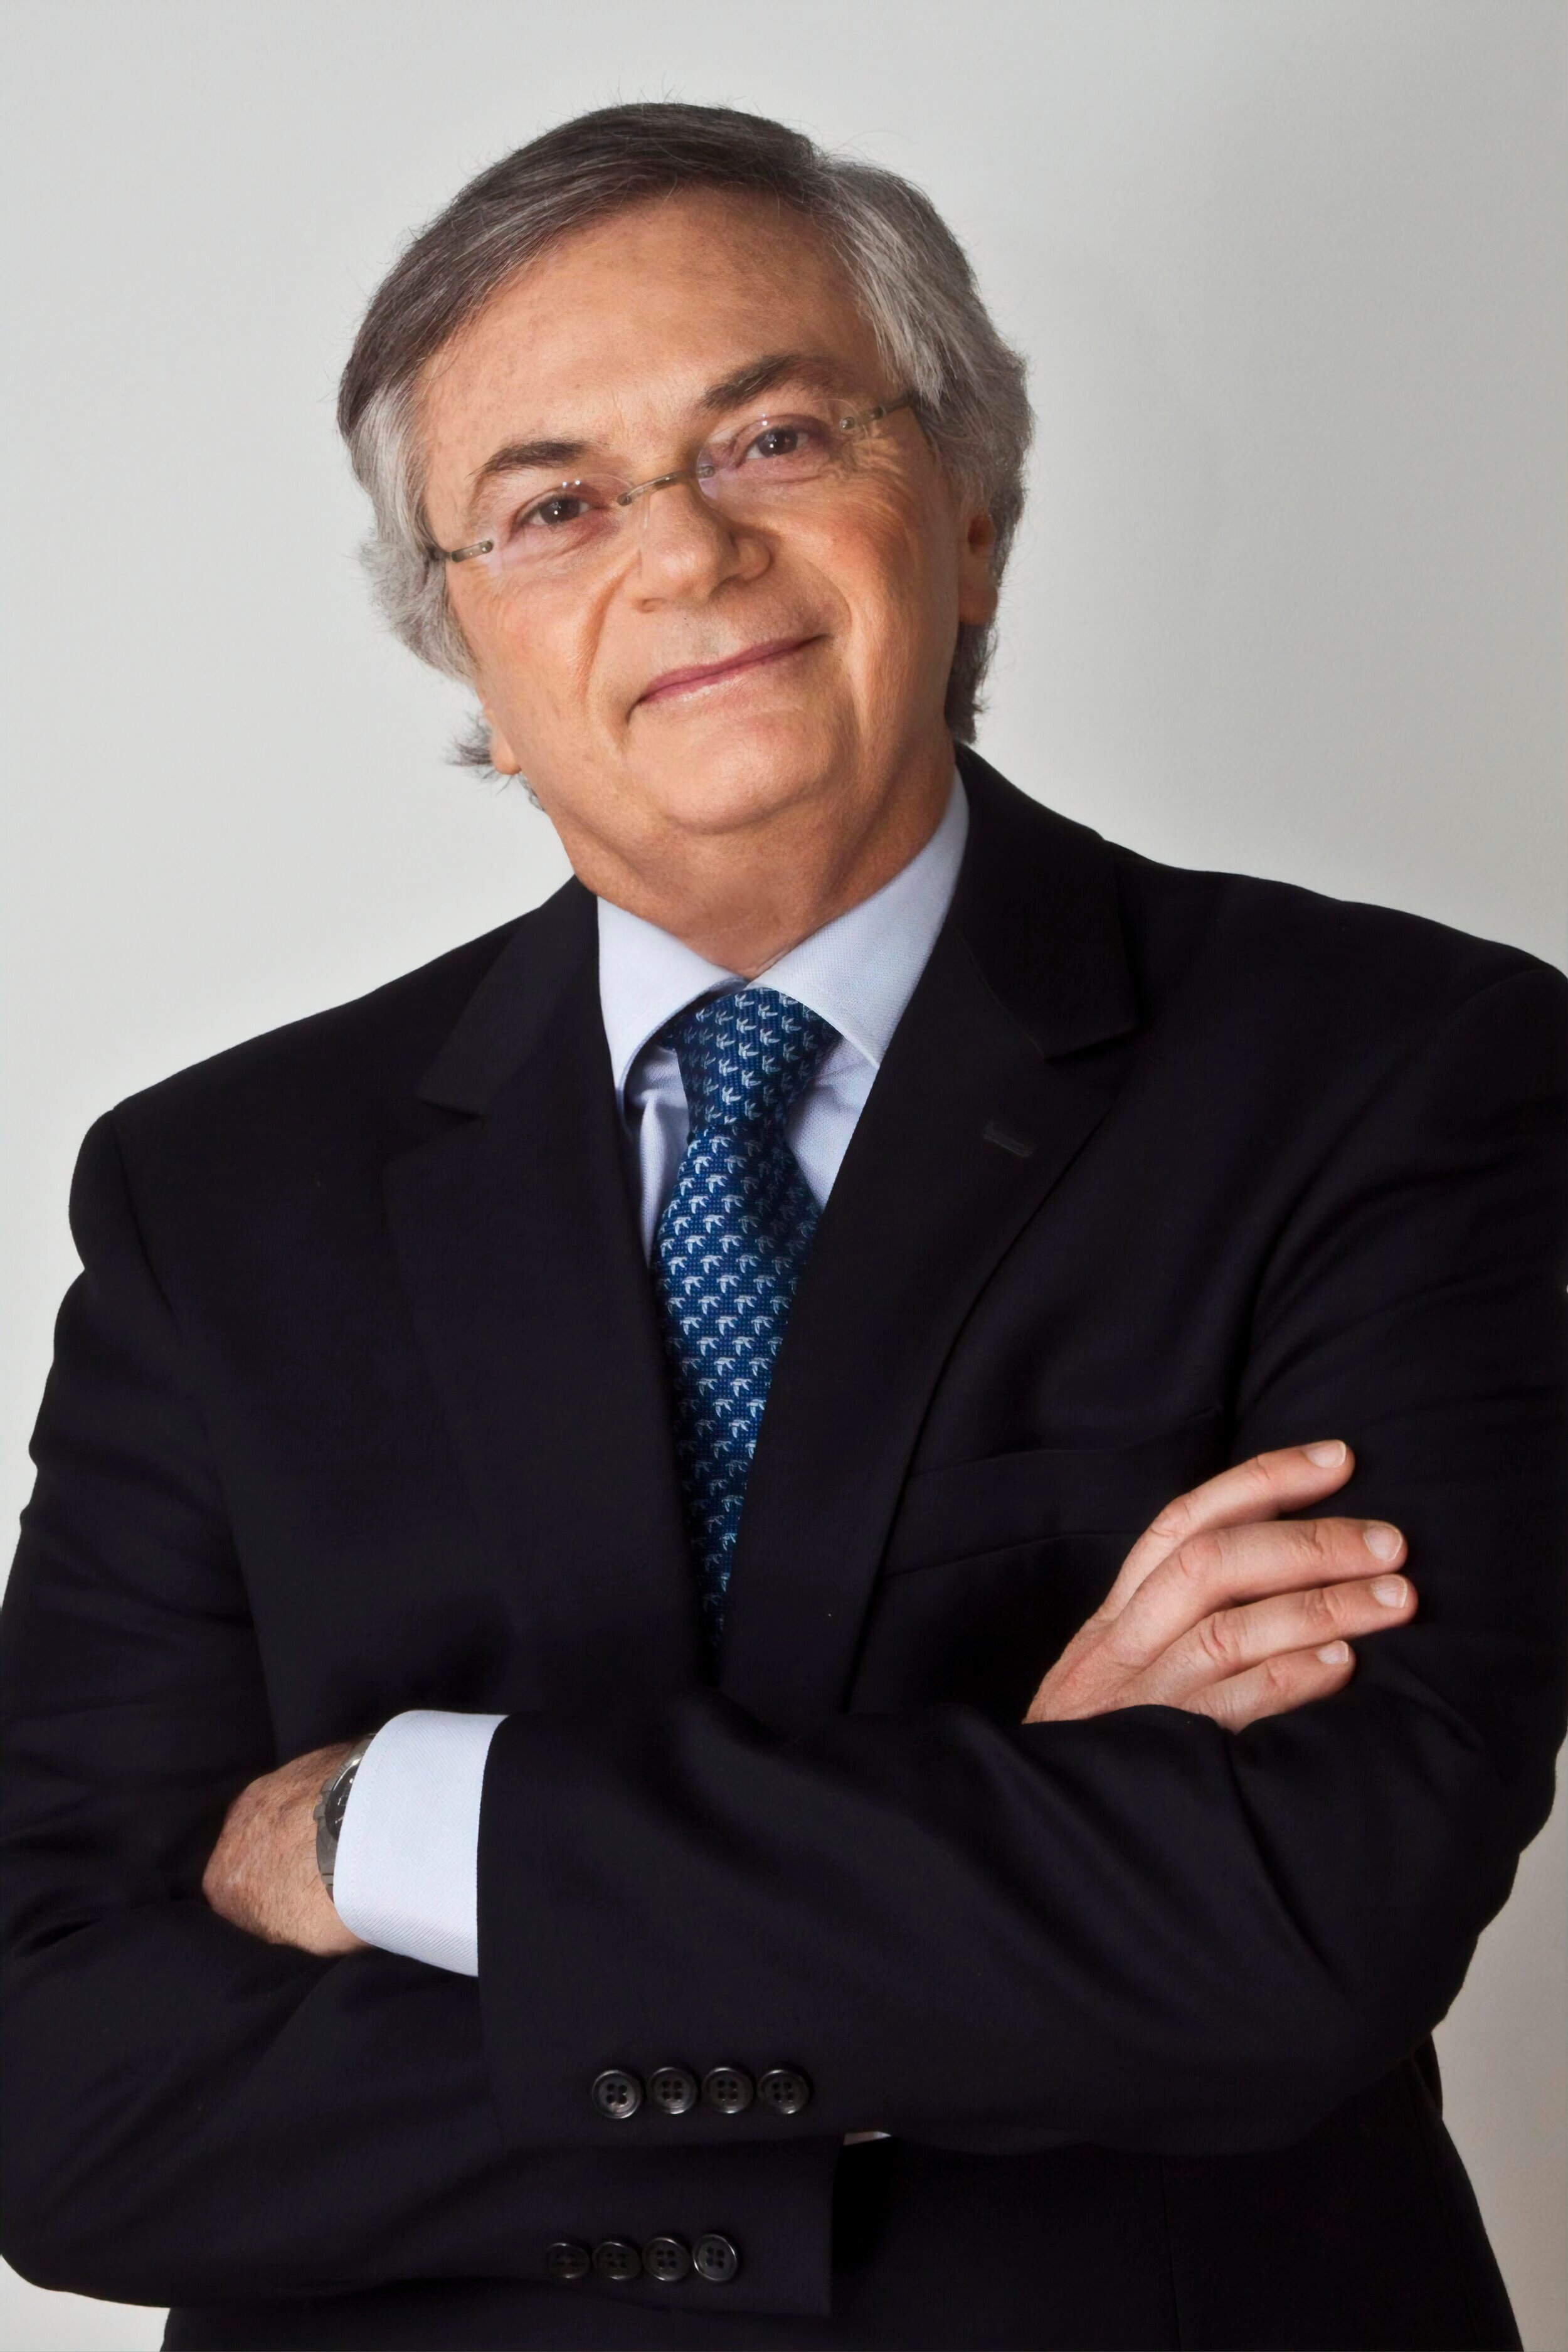 Dr. Moisés Naím, Chairman and Founder